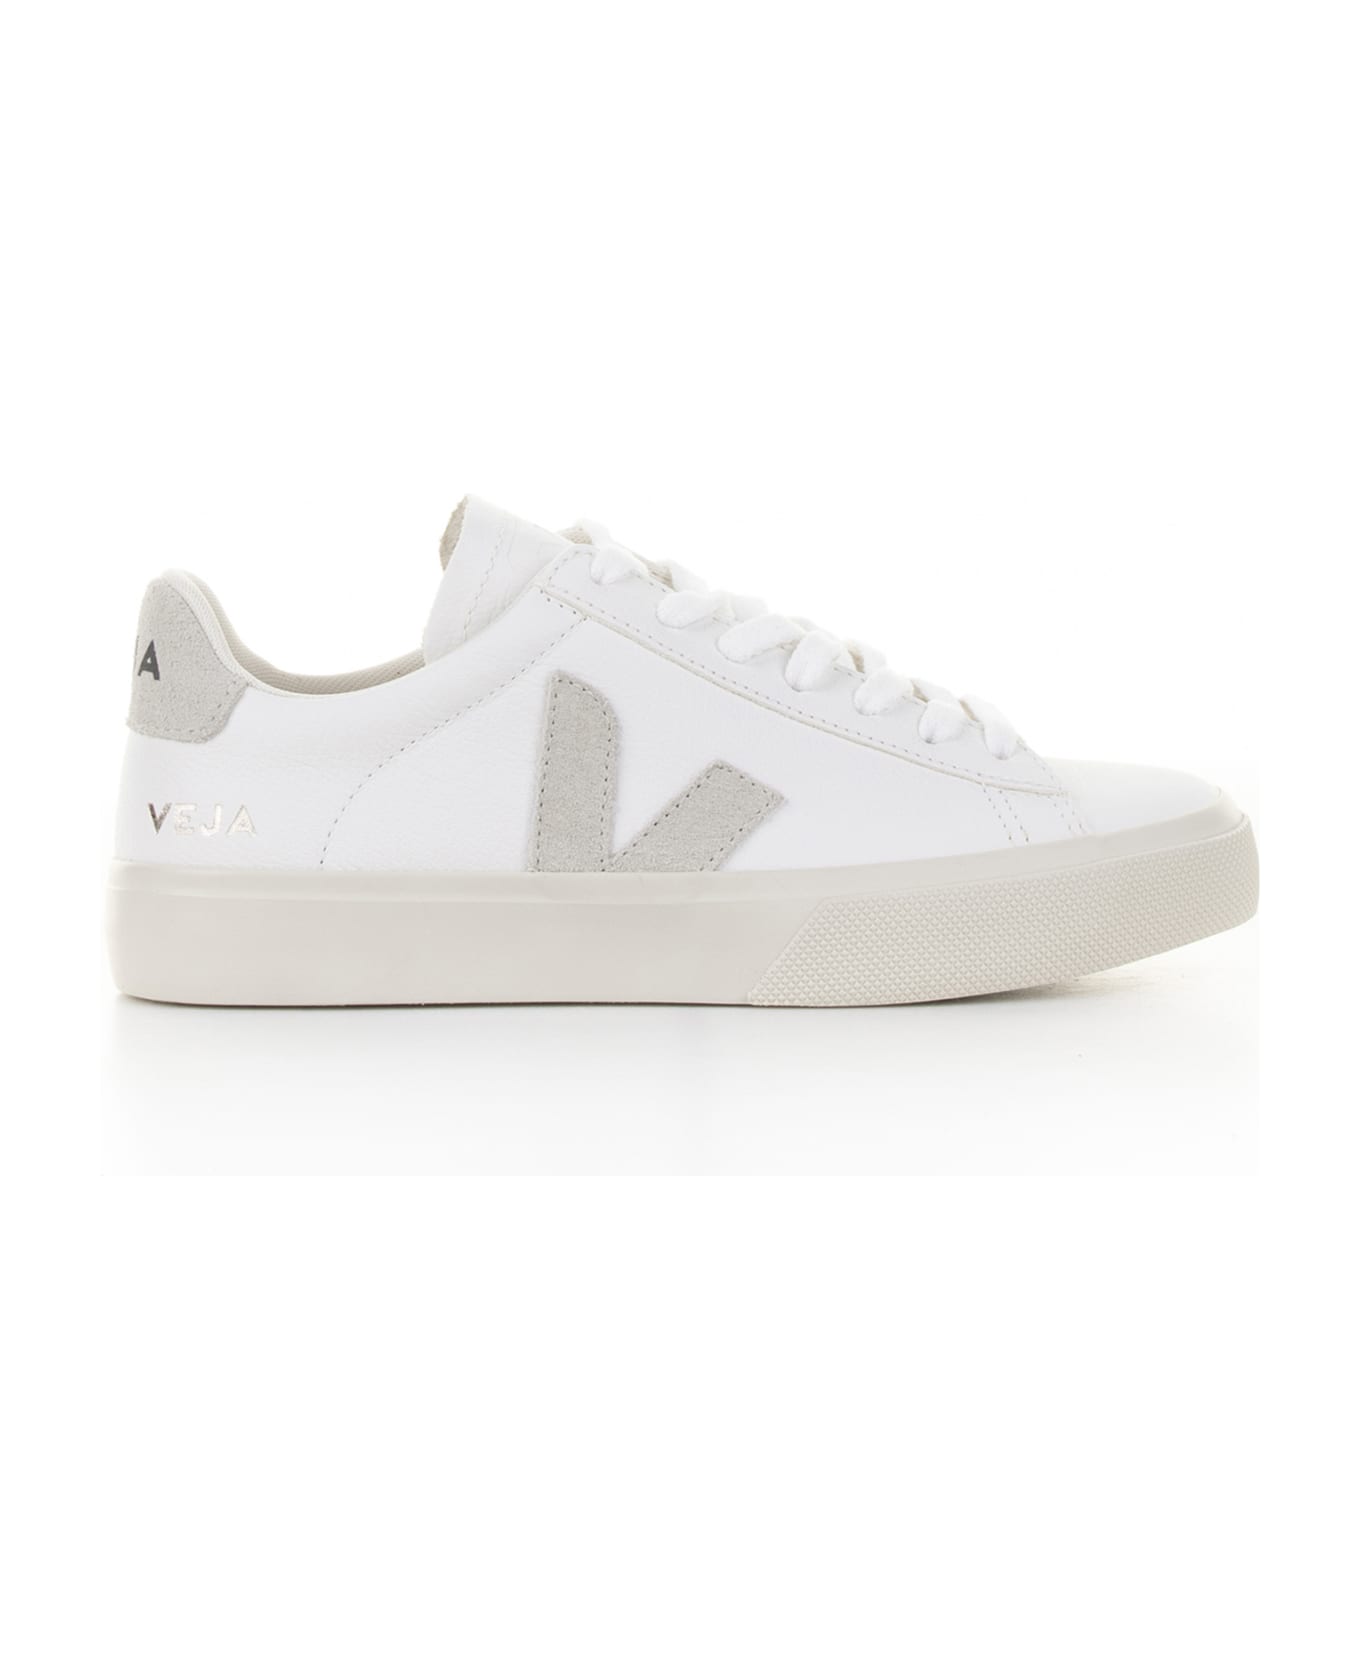 Veja Campo Sneaker In White Gray Leather For Men スニーカー